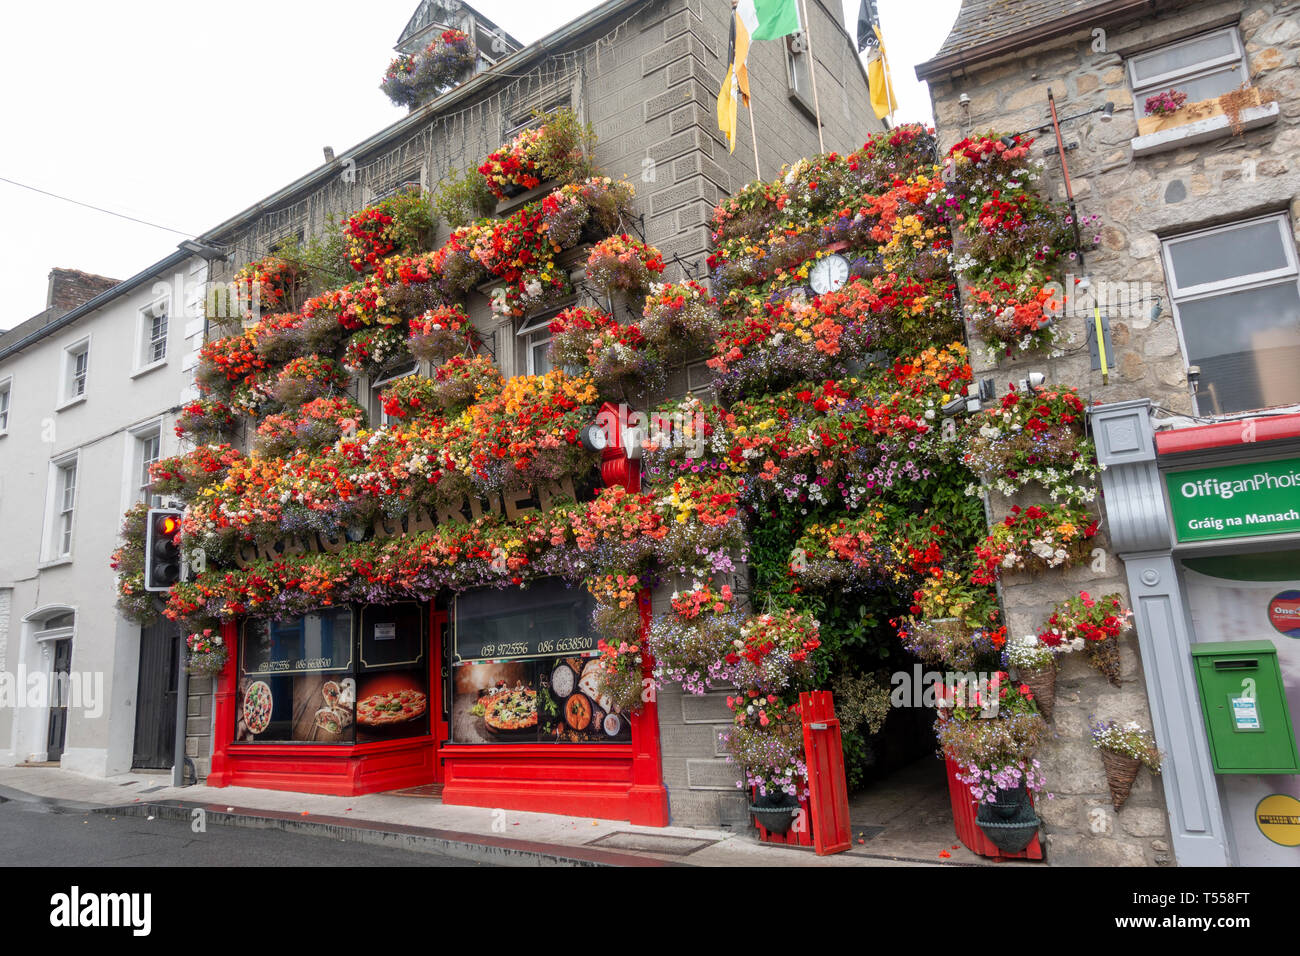 L'étonnant couvert de fleurs Jardin Graig restaurant sur Main Street, Blackpool, comté de Kilkenny, Irlande. Banque D'Images